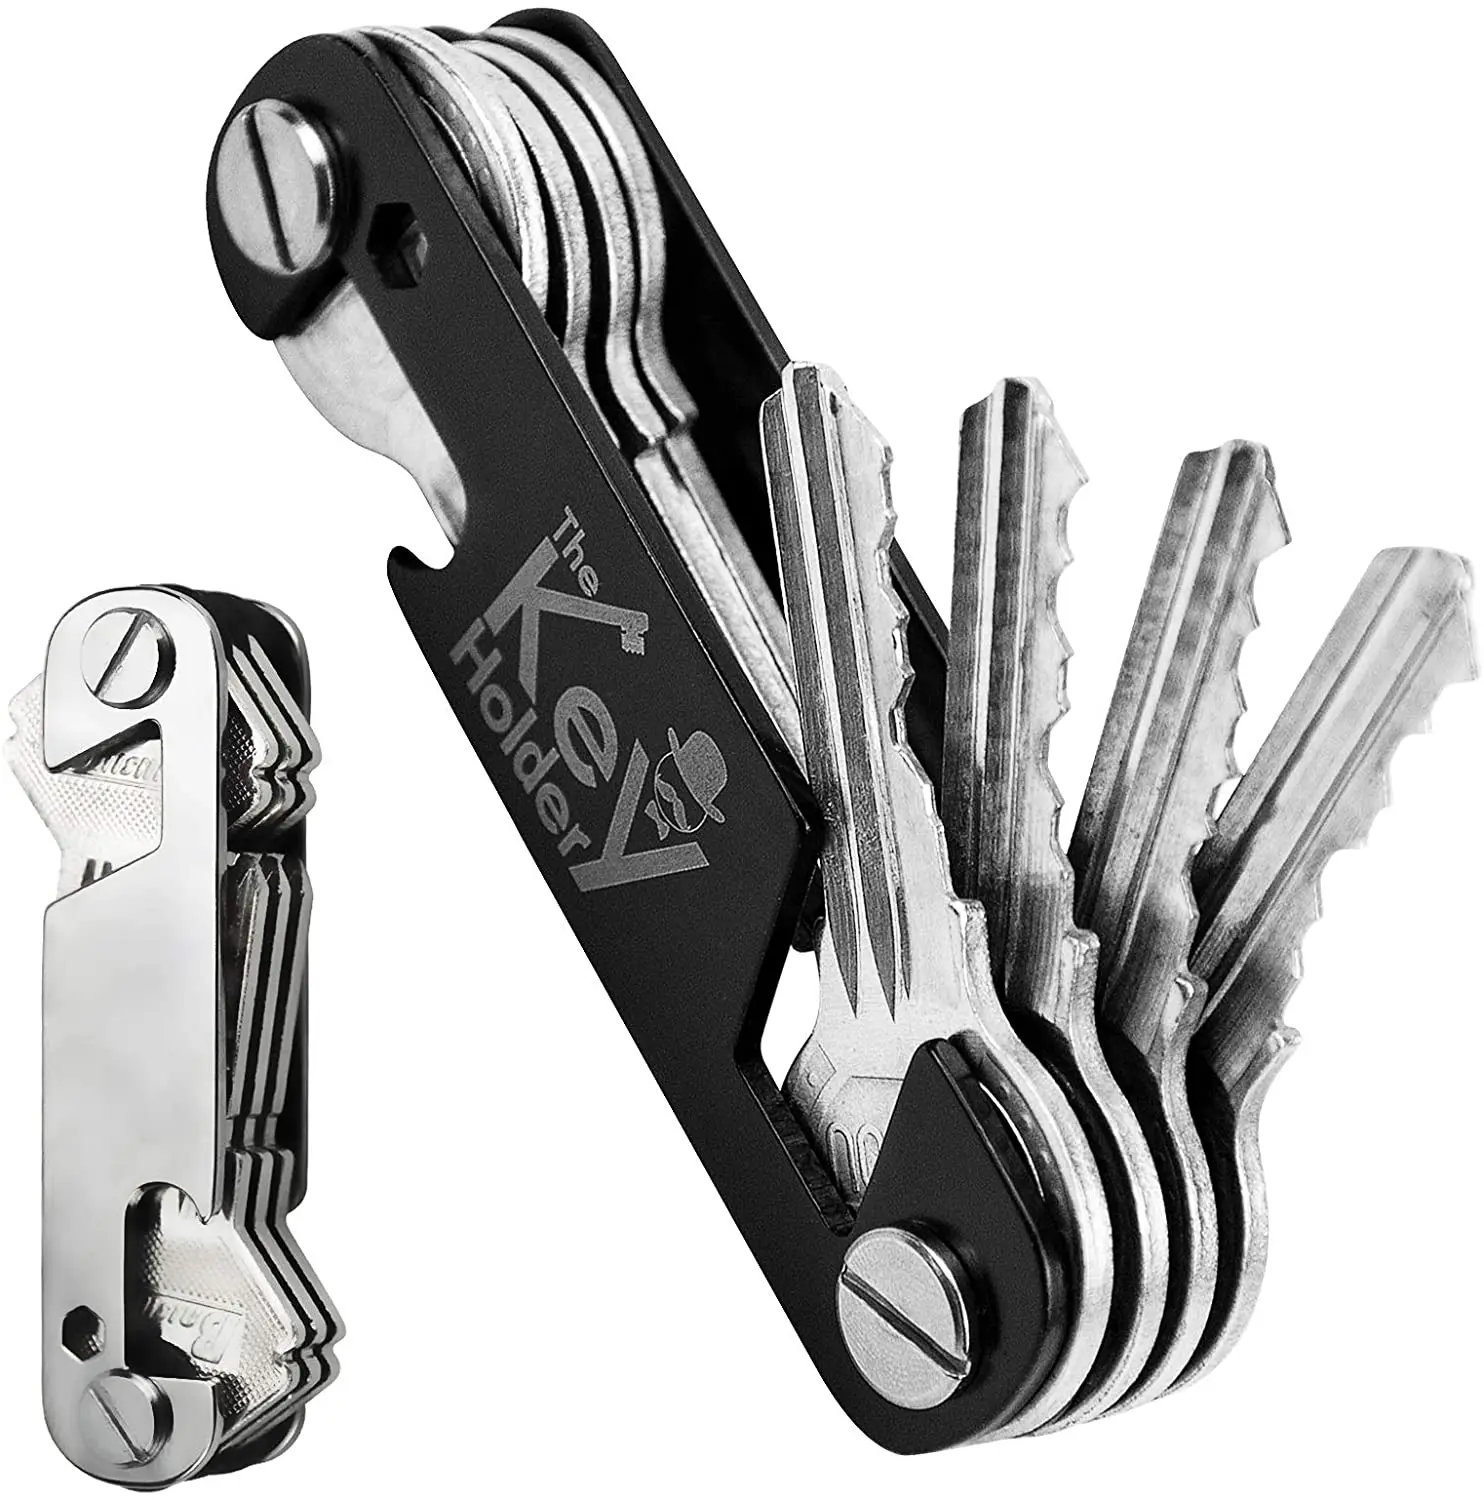 Portachiavi moda uomo per chiavi auto chiavi di marca aziendale chiavi di qualità portafoglio chiavi compatte organizzatori intelligenti